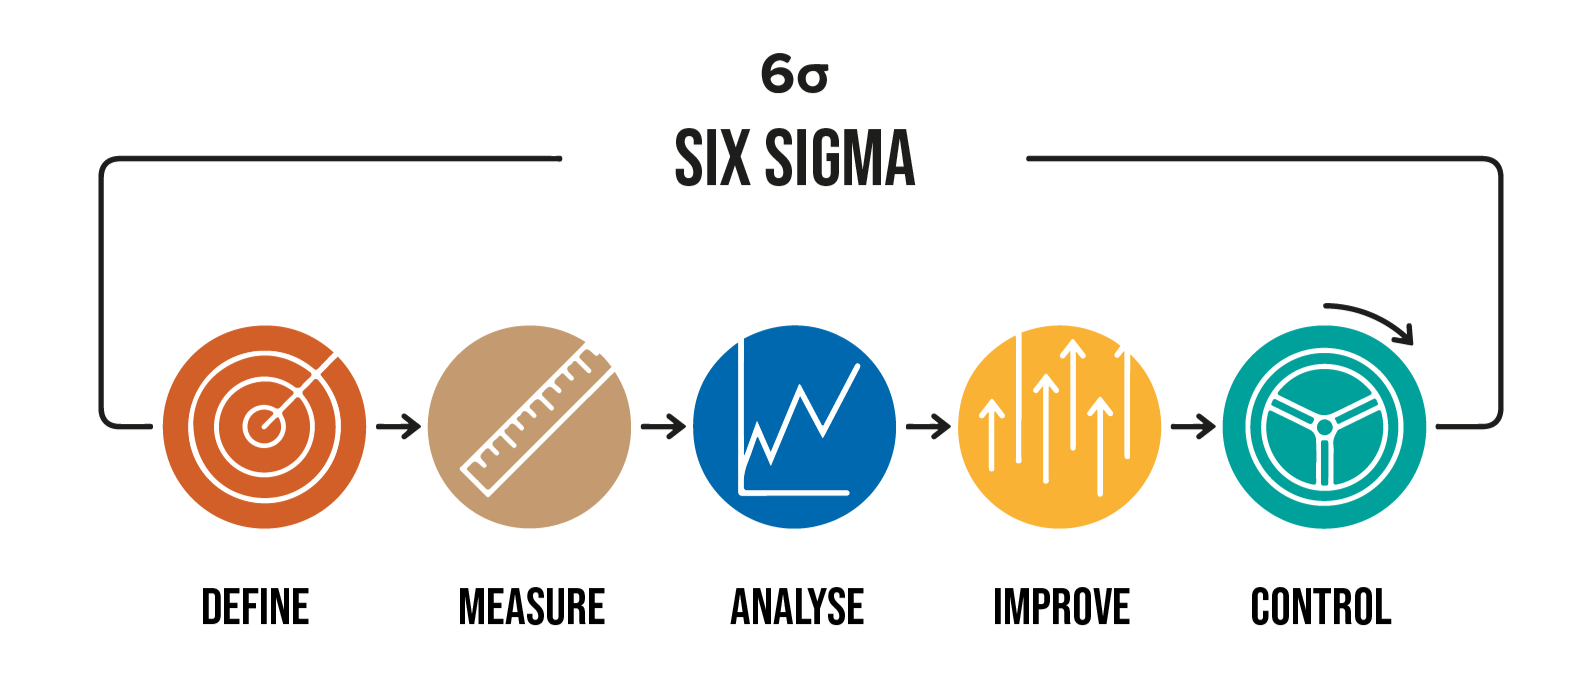 Six Sigma Model: Define-measure-analyze-improve-control